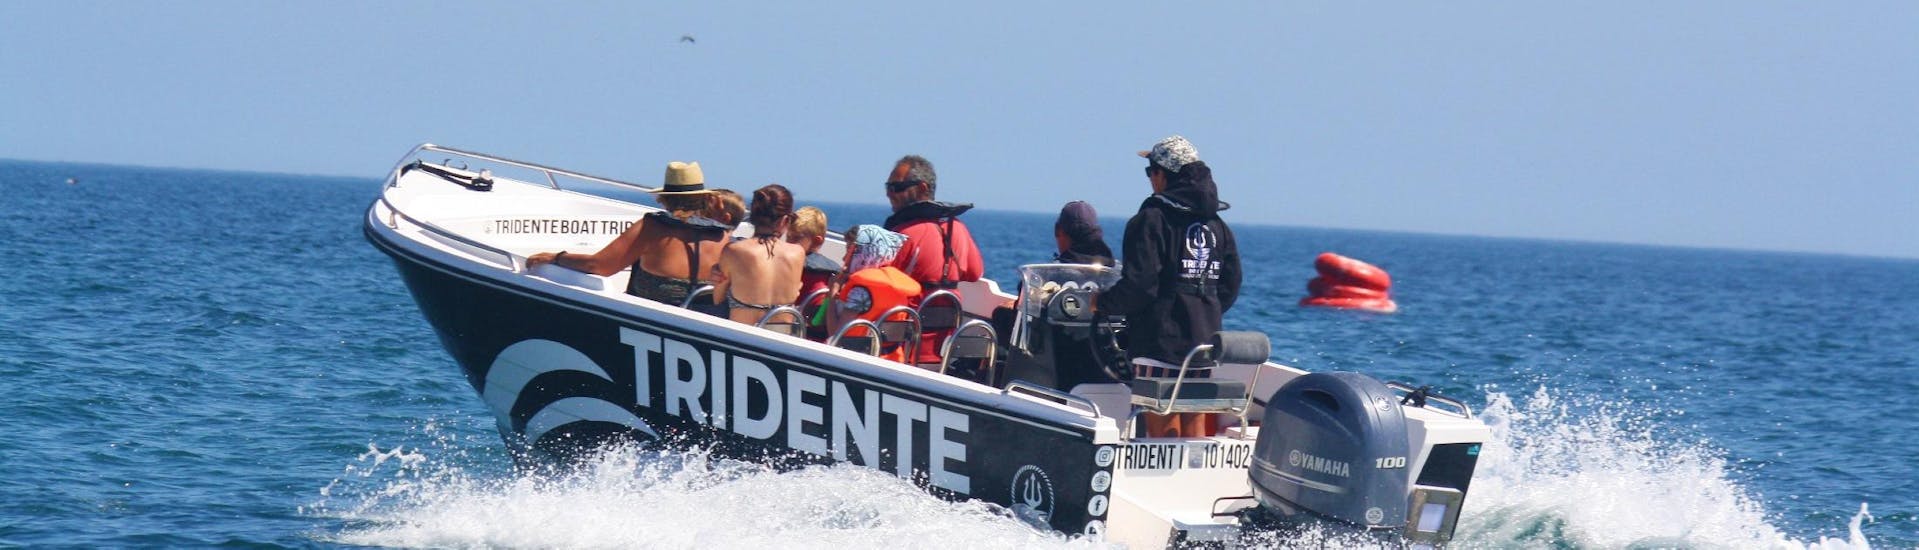 En un viaje en barco a la cueva de Benagil desde Armação De Pêra con Tridente Boat Trips Algarve, los pasajeros disfrutan del paseo a lo largo de la costa del Algarve en compañía de su experimentado capitán.